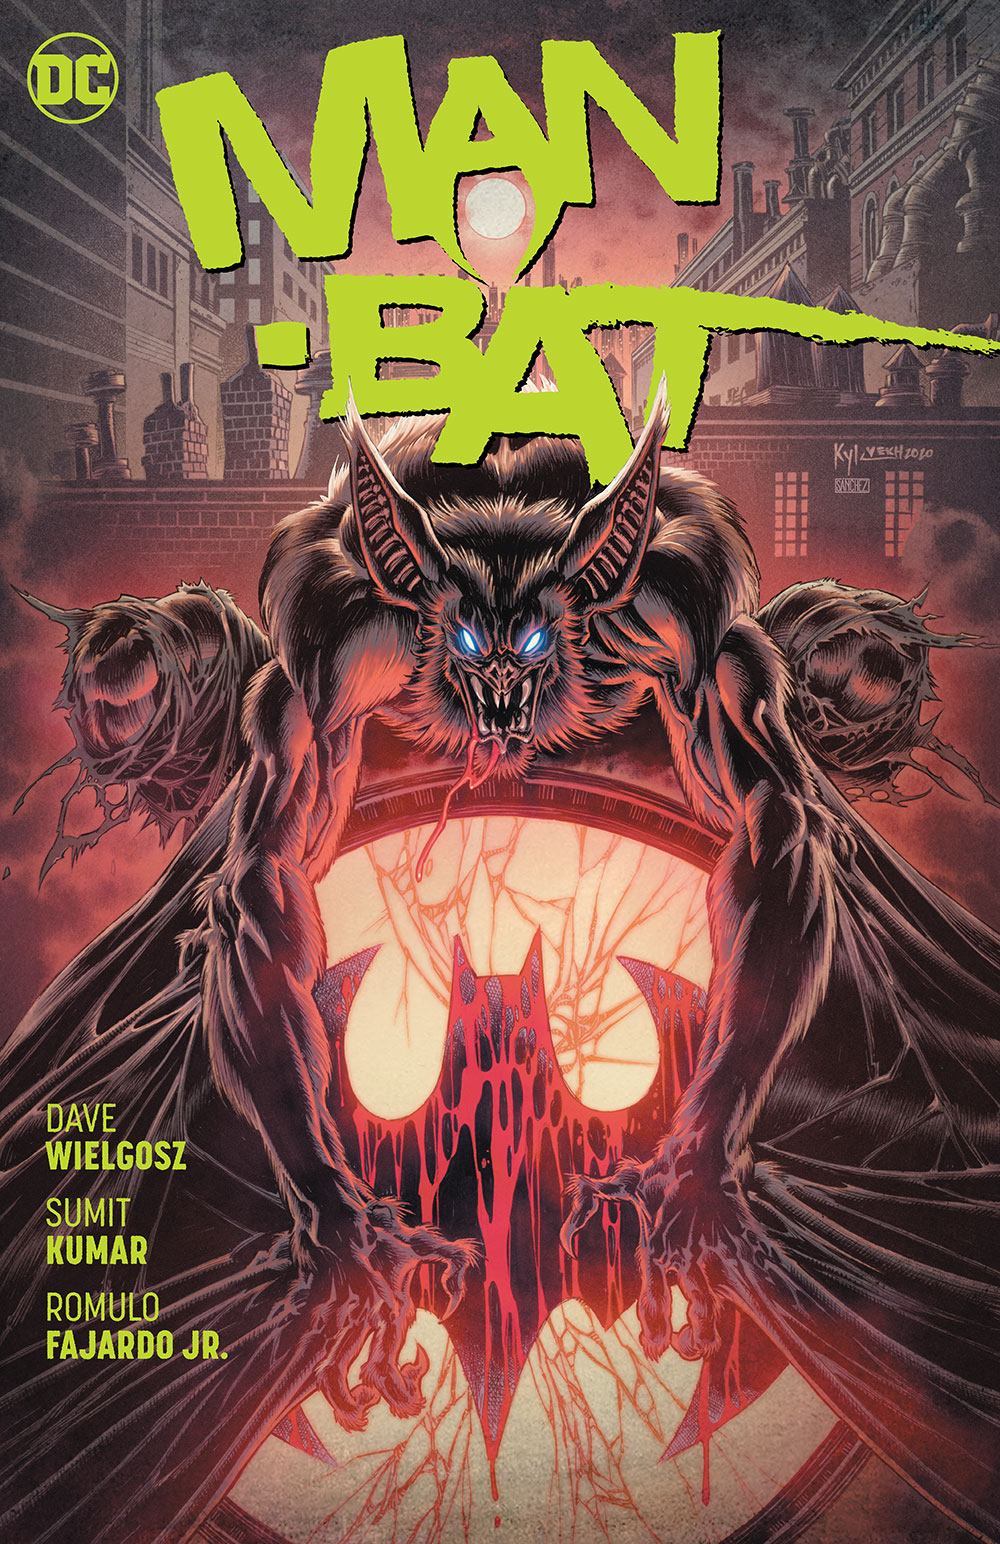 Man-Bat Graphic Novel